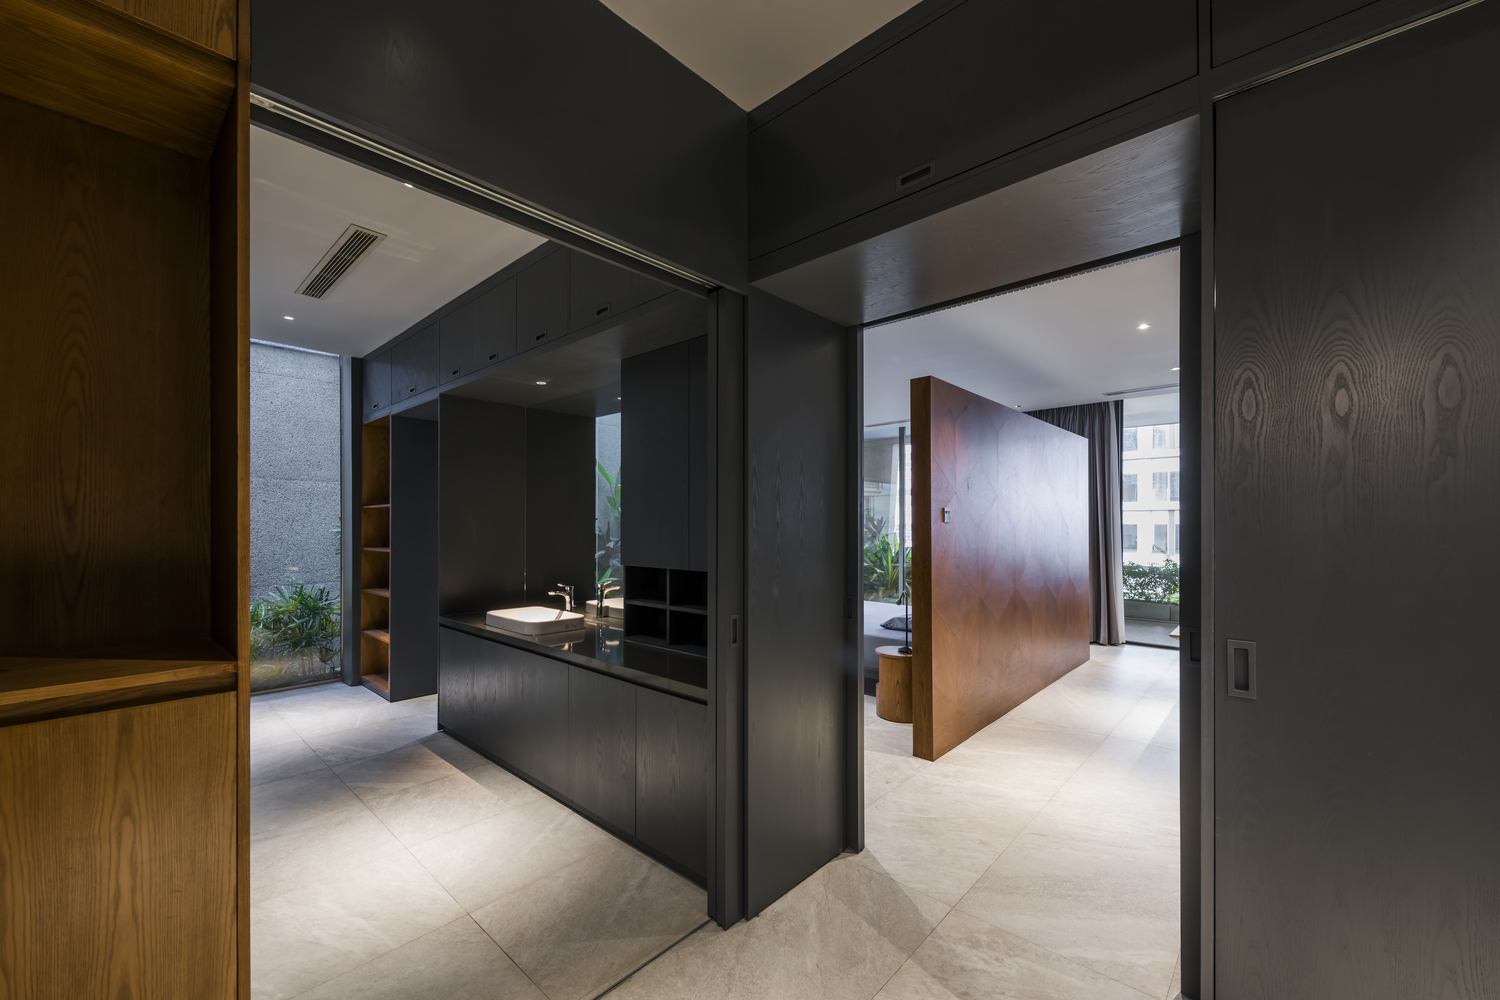 Phòng tắm và nhà vệ sinh được bố trí bên cạnh phòng ngủ, với tone màu đen sang trọng kết hợp hệ thống tủ lưu trữ ẩn tiện nghi.